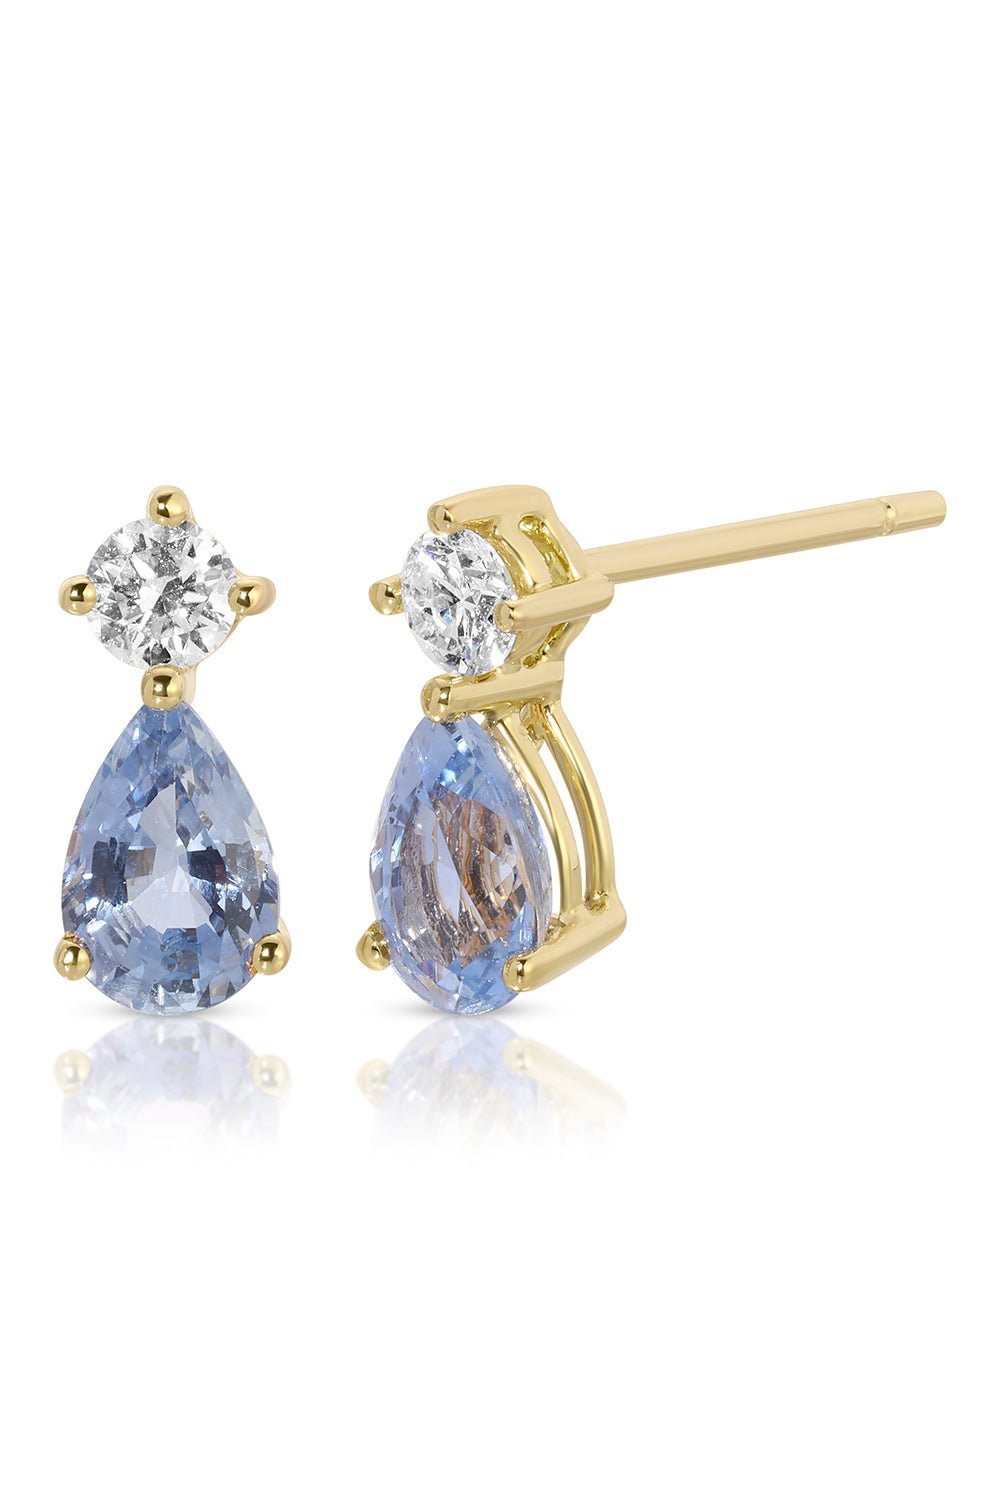 ANITA KO-Blue Sapphire Stud Earrings-YLWGLD